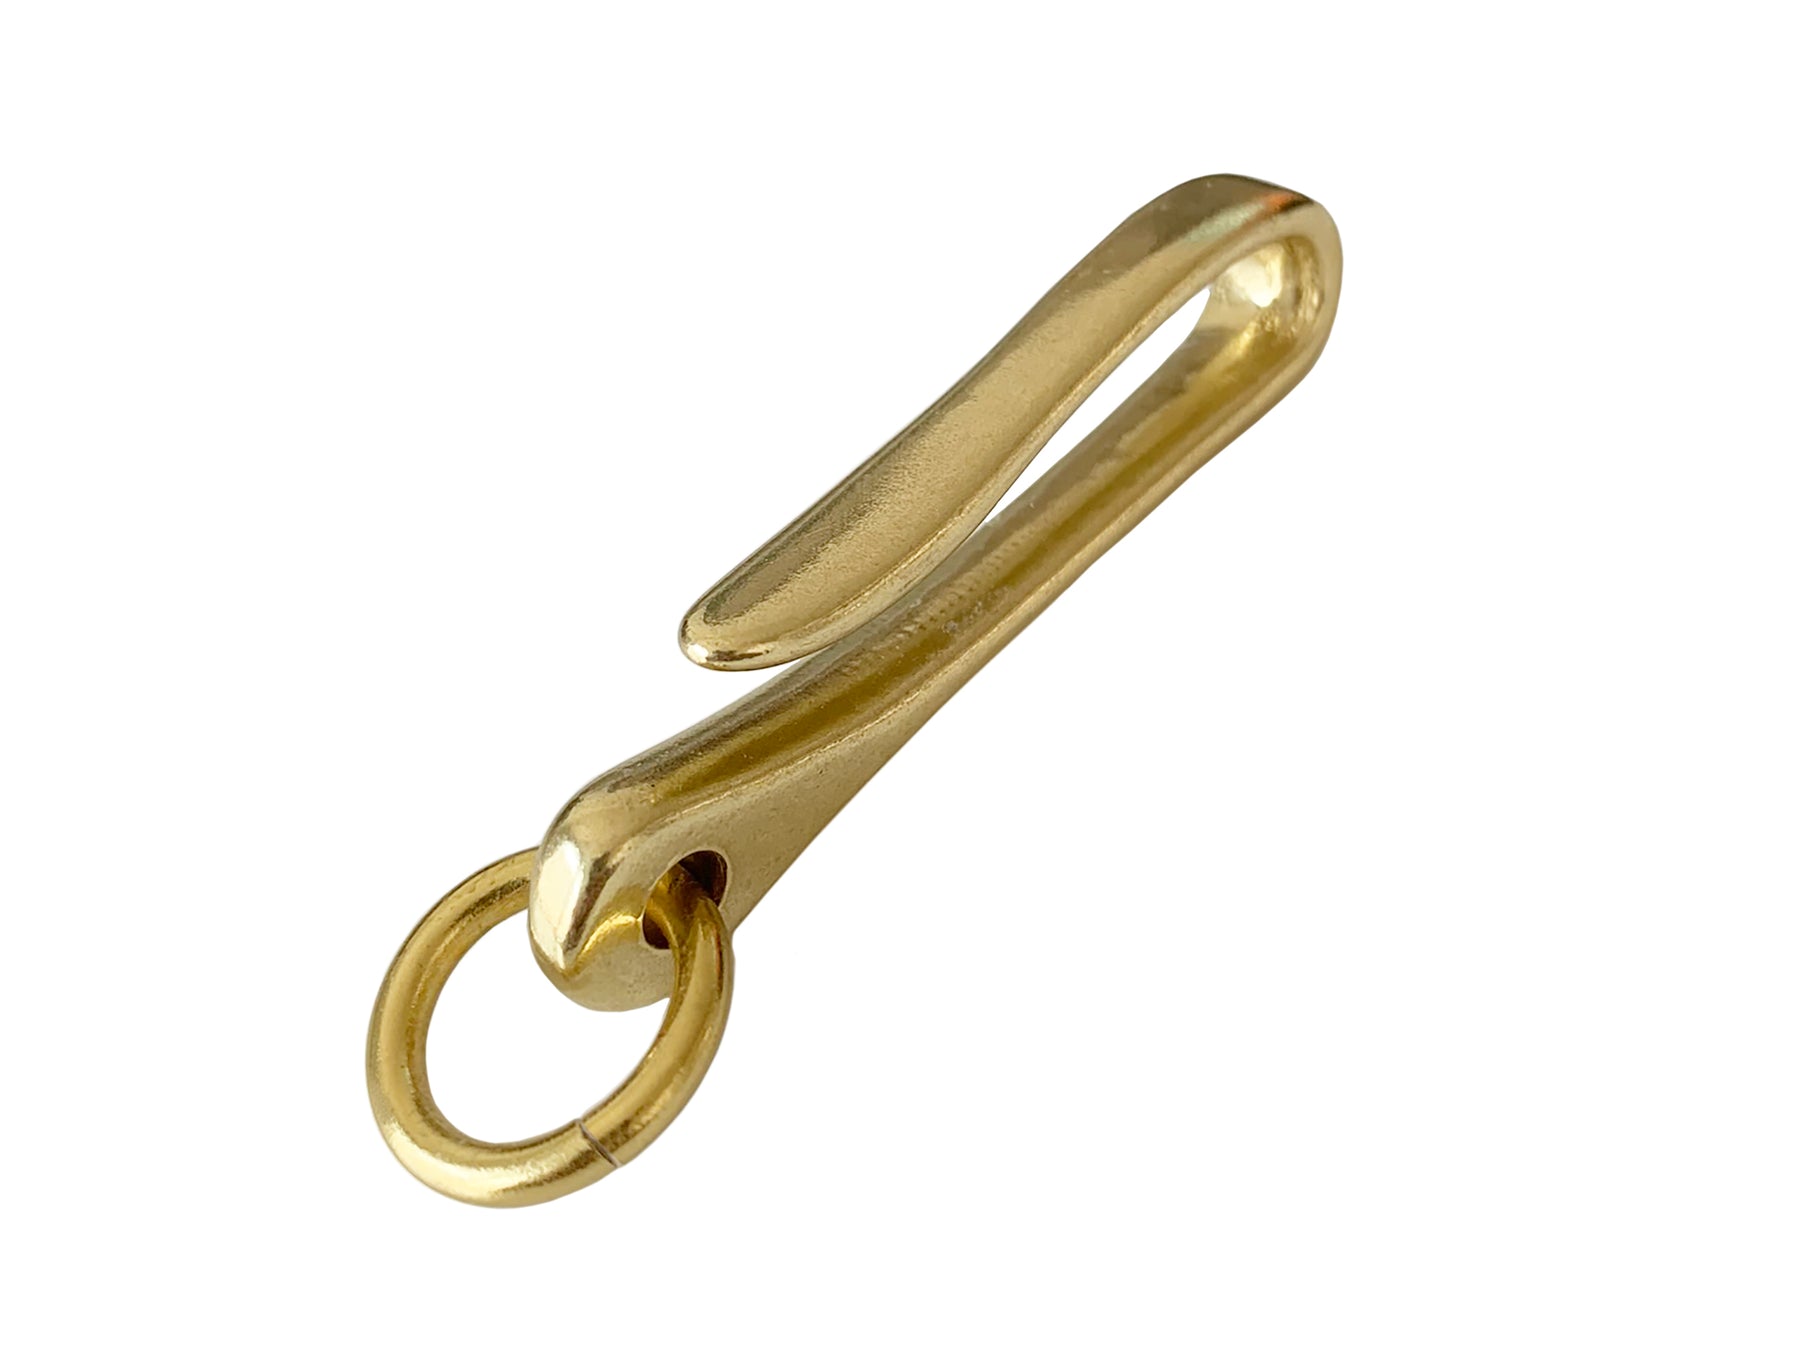 Handmade Brass / Stainless steel keychain hook clip pants loop key